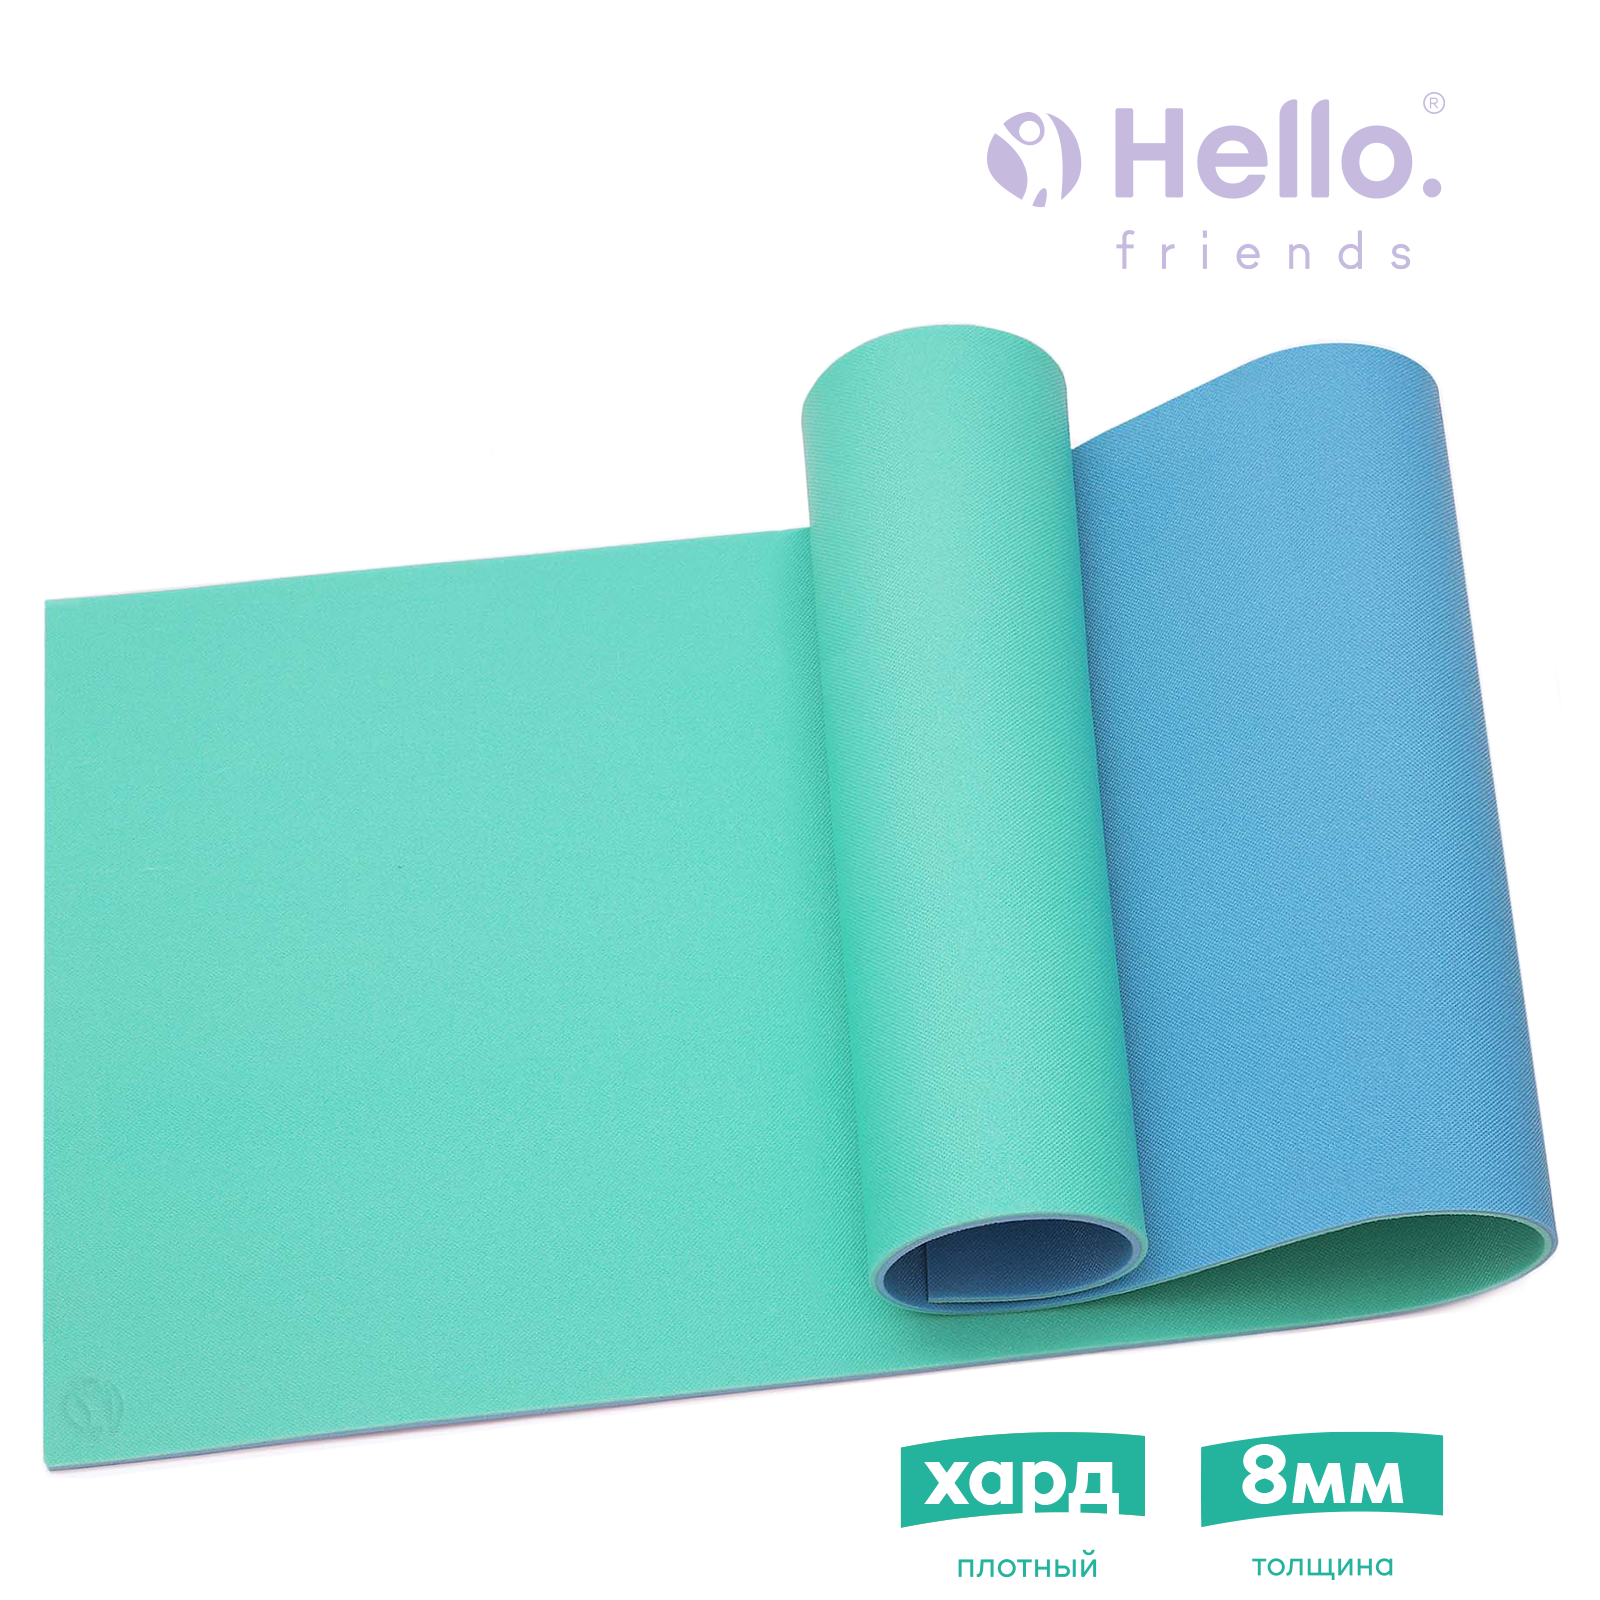 Коврик для фитнеса и йоги HelloFriends Hard 8мм 80x60 см, голубой, нескользящий